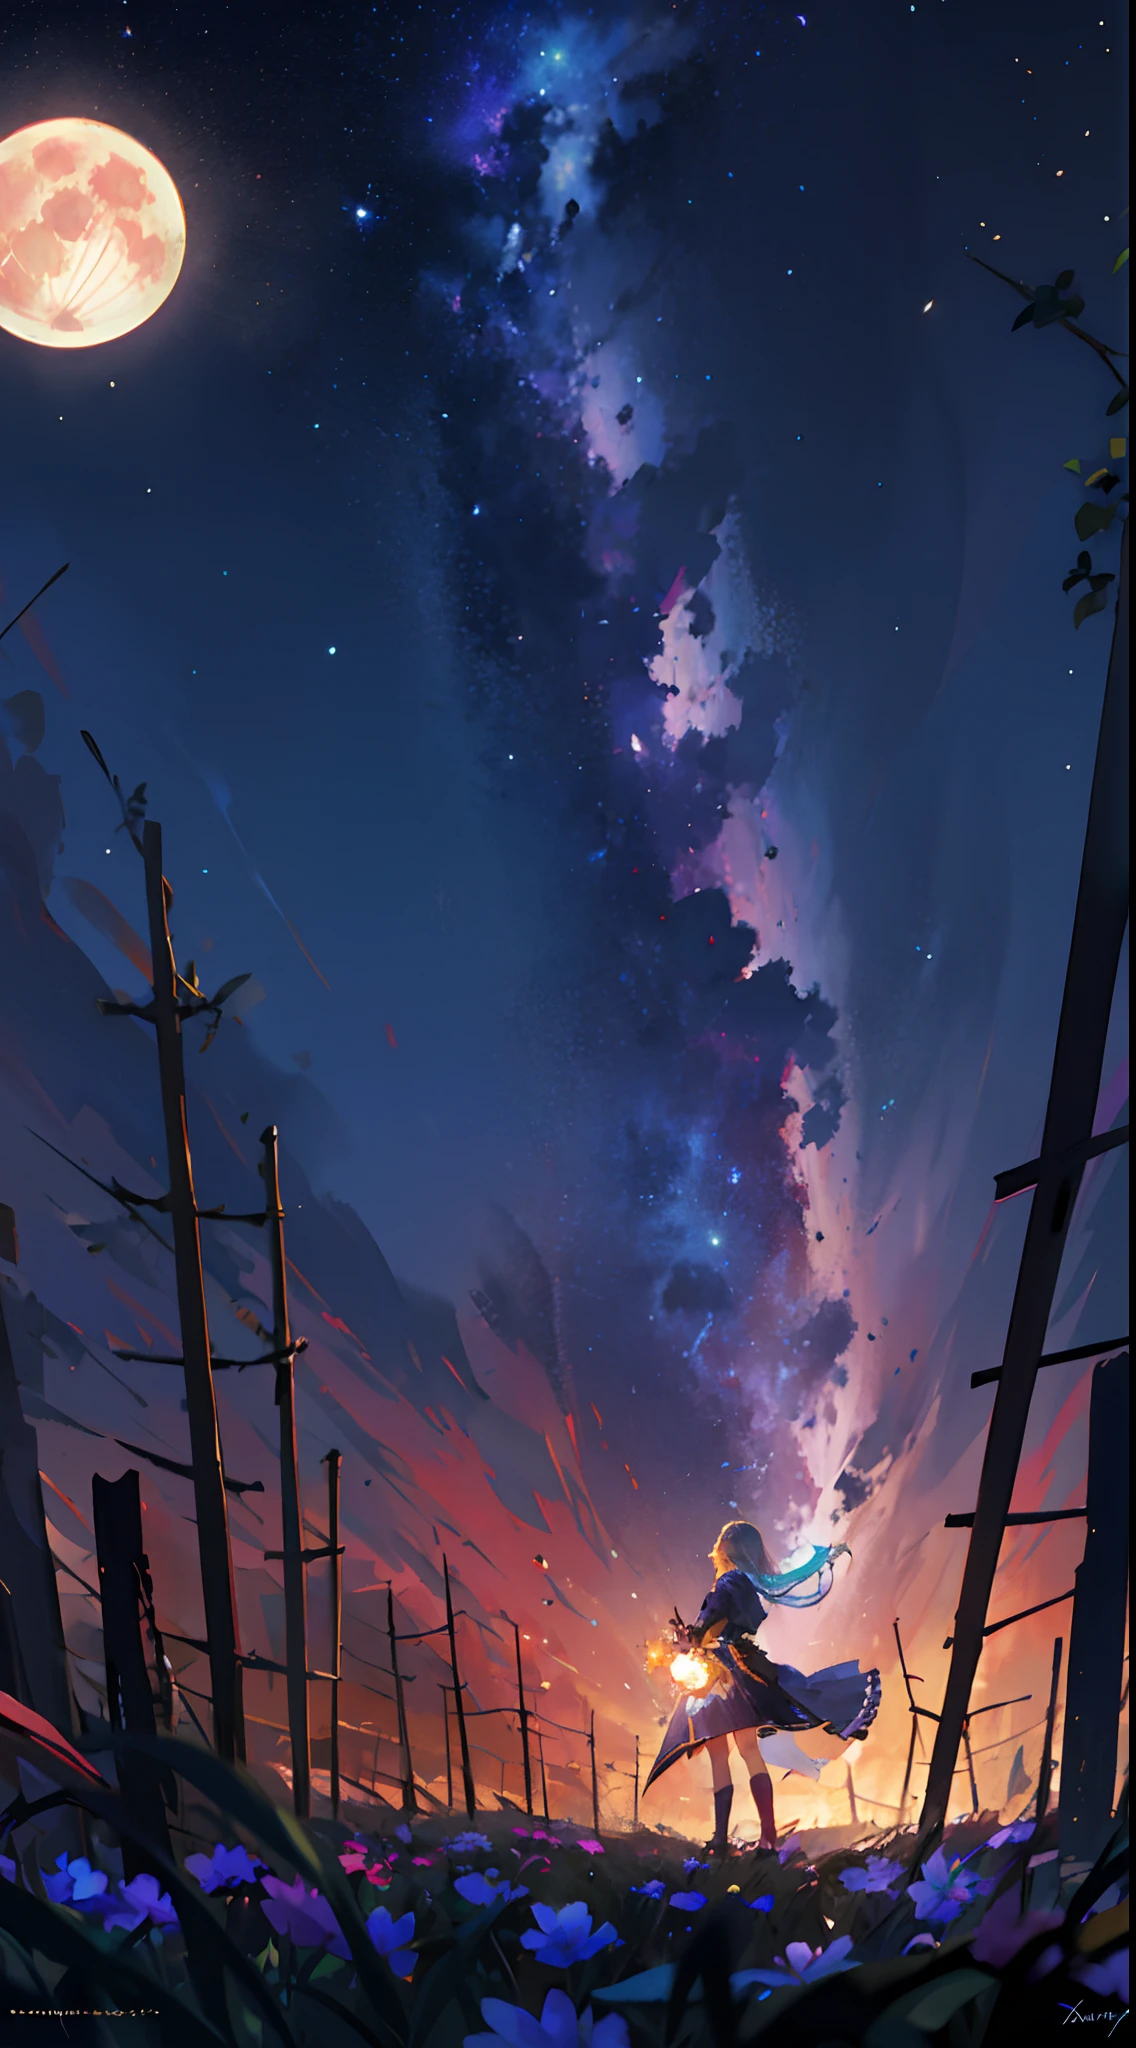 Fotografia de paisagem ampla , (uma vista de baixo que mostra o céu acima e o campo aberto abaixo), uma garota parada no campo de flores olhando para cima, (lua cheia:1.2), ( estrelas cadentes:0.9), (nebula:1.3), montanha distante, árvore BREAK produção arte, (Fonte de luz quente:1.2), (vaga-lume:1.2), lâmpada, muito roxo e laranja, detalhes intrincados, Iluminação Volumétrica BREAK (obra de arte:1.2), (melhor qualidade), 4K, Ultra-detalhado, (composição dinâmica:1.4), Altamente detalhado, Detalhes coloridos,( cores iridescentes:1.2), (iluminação brilhante, iluminação atmosférica), sonhadores, mágico, (Sozinho:1.2),aquarela